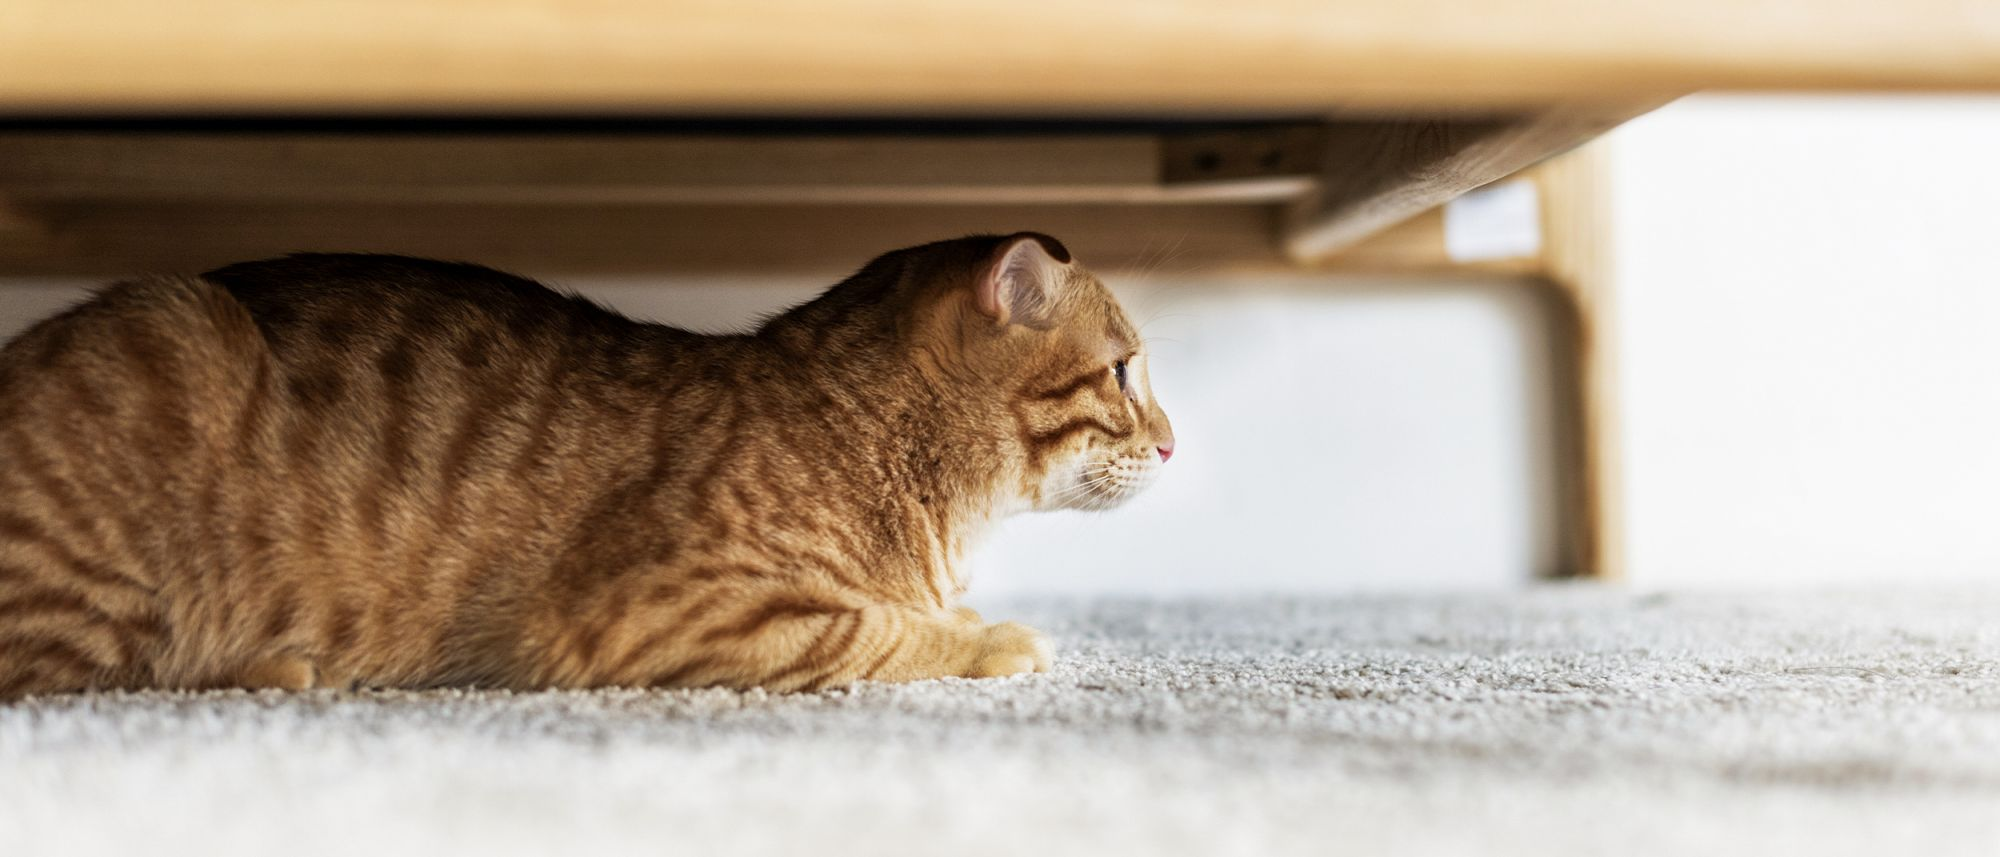 Gato sentado debajo de una mesa en el interior